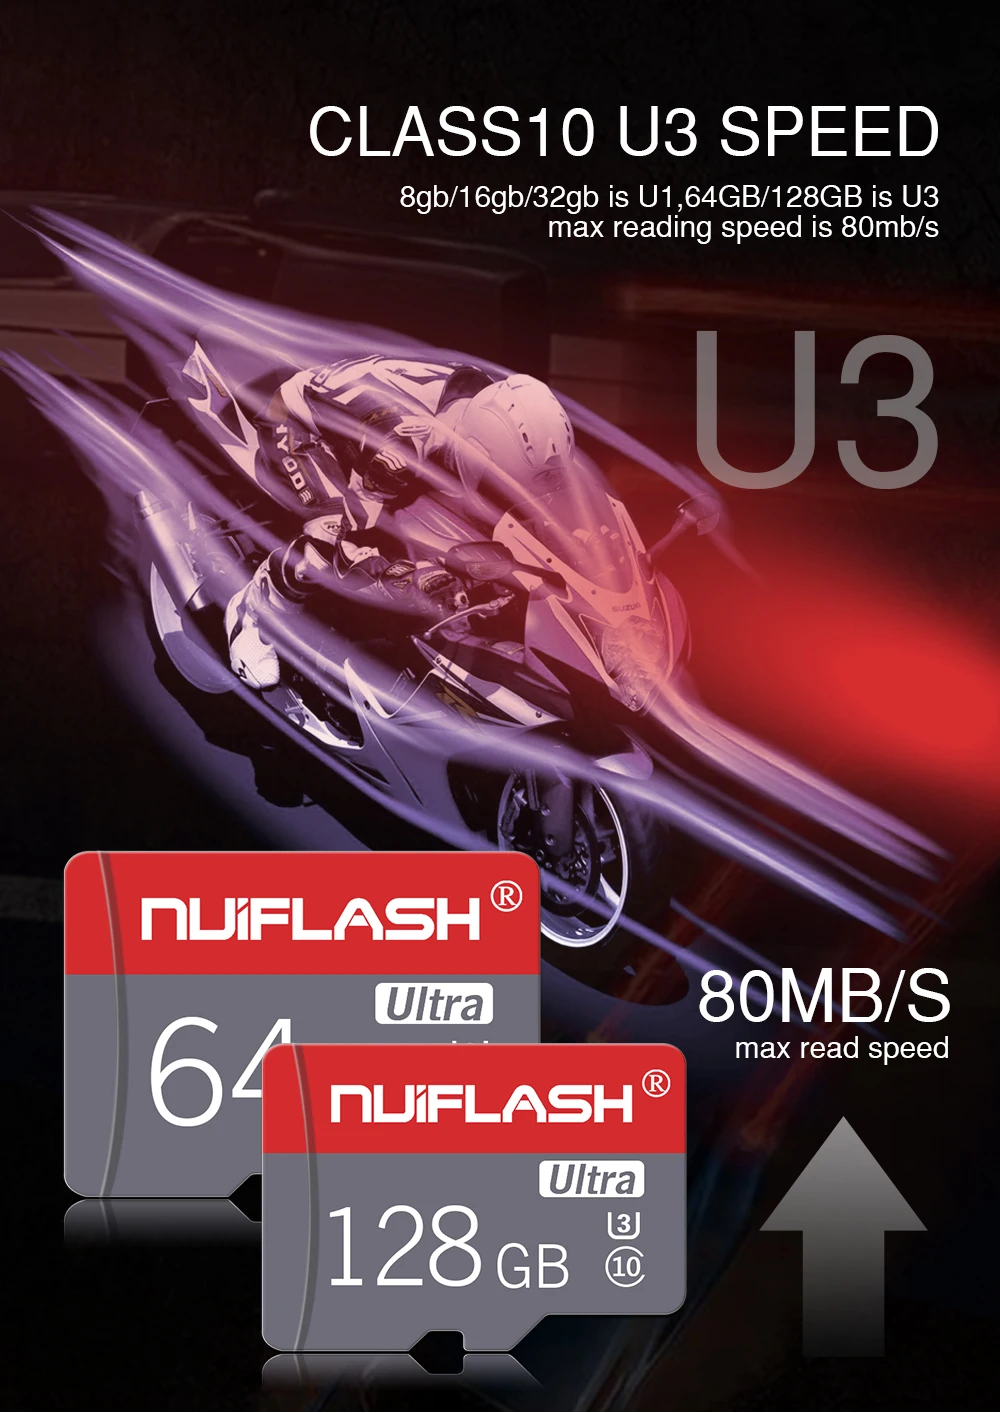 Micro TF карты Nuiflash высокоскоростные карты памяти класс 10 4 ГБ 8 ГБ 16 ГБ 32 ГБ 64 Гб 128 Гб Micro SD карты для samsung, телефона, планшетов